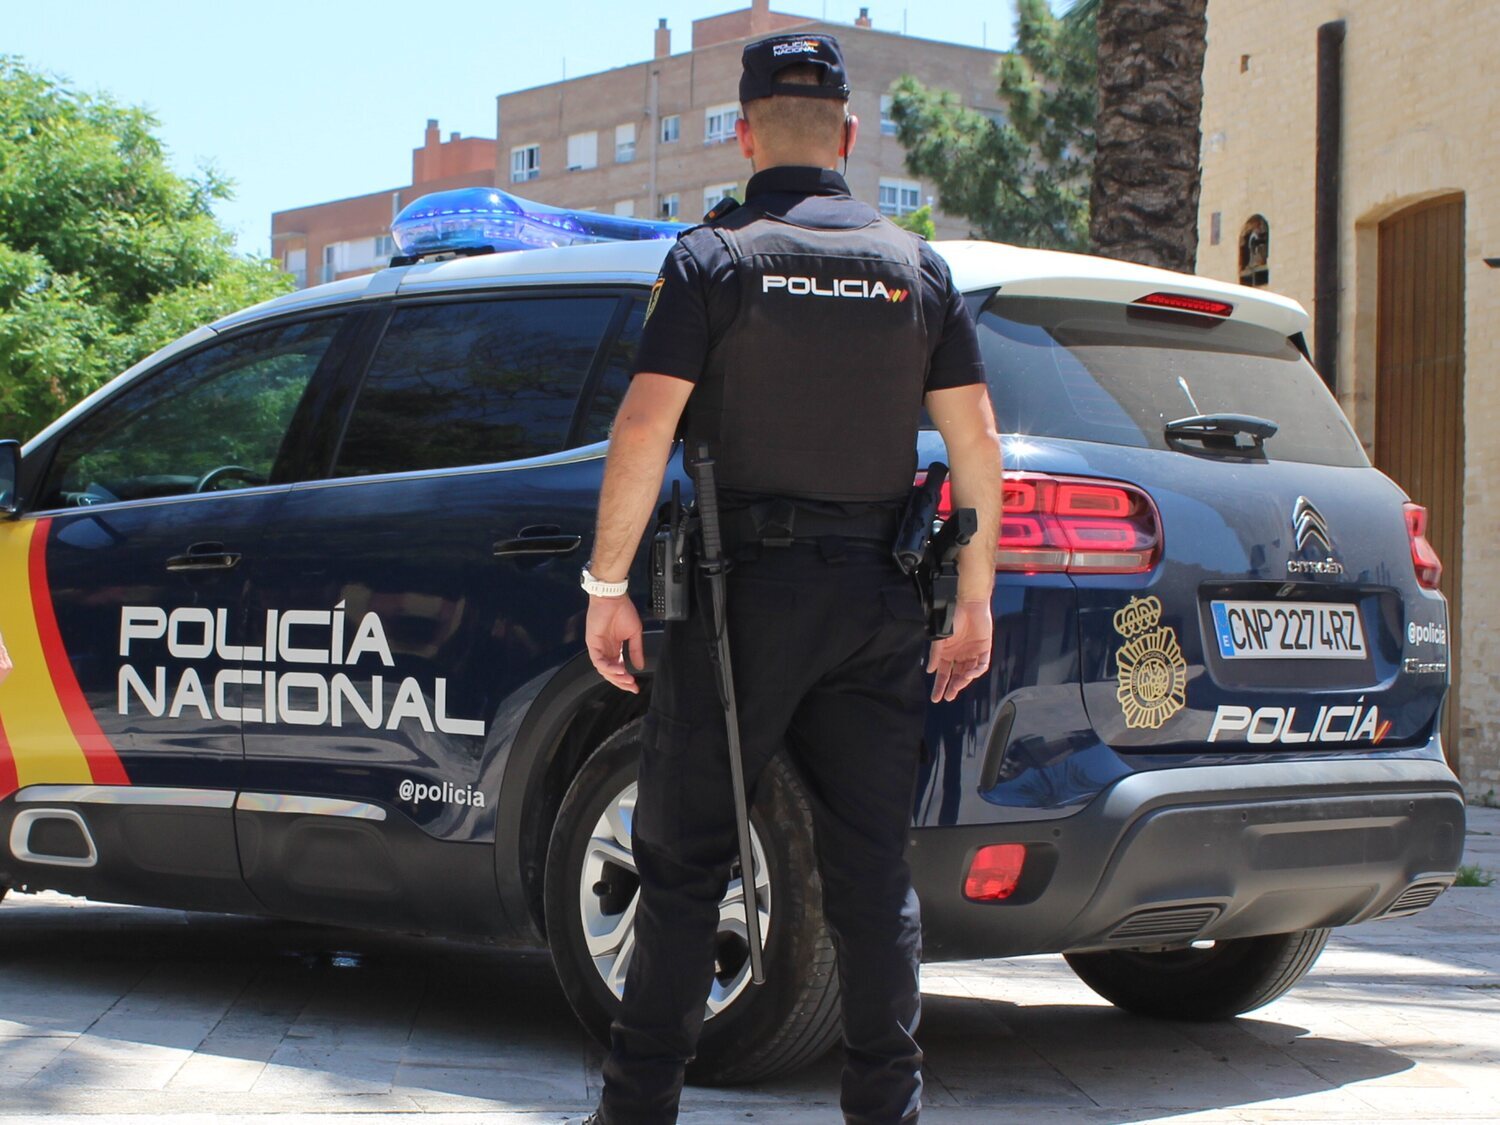 Detenido por intentar llevarse a un bebé de un hospital en Palma de Mallorca